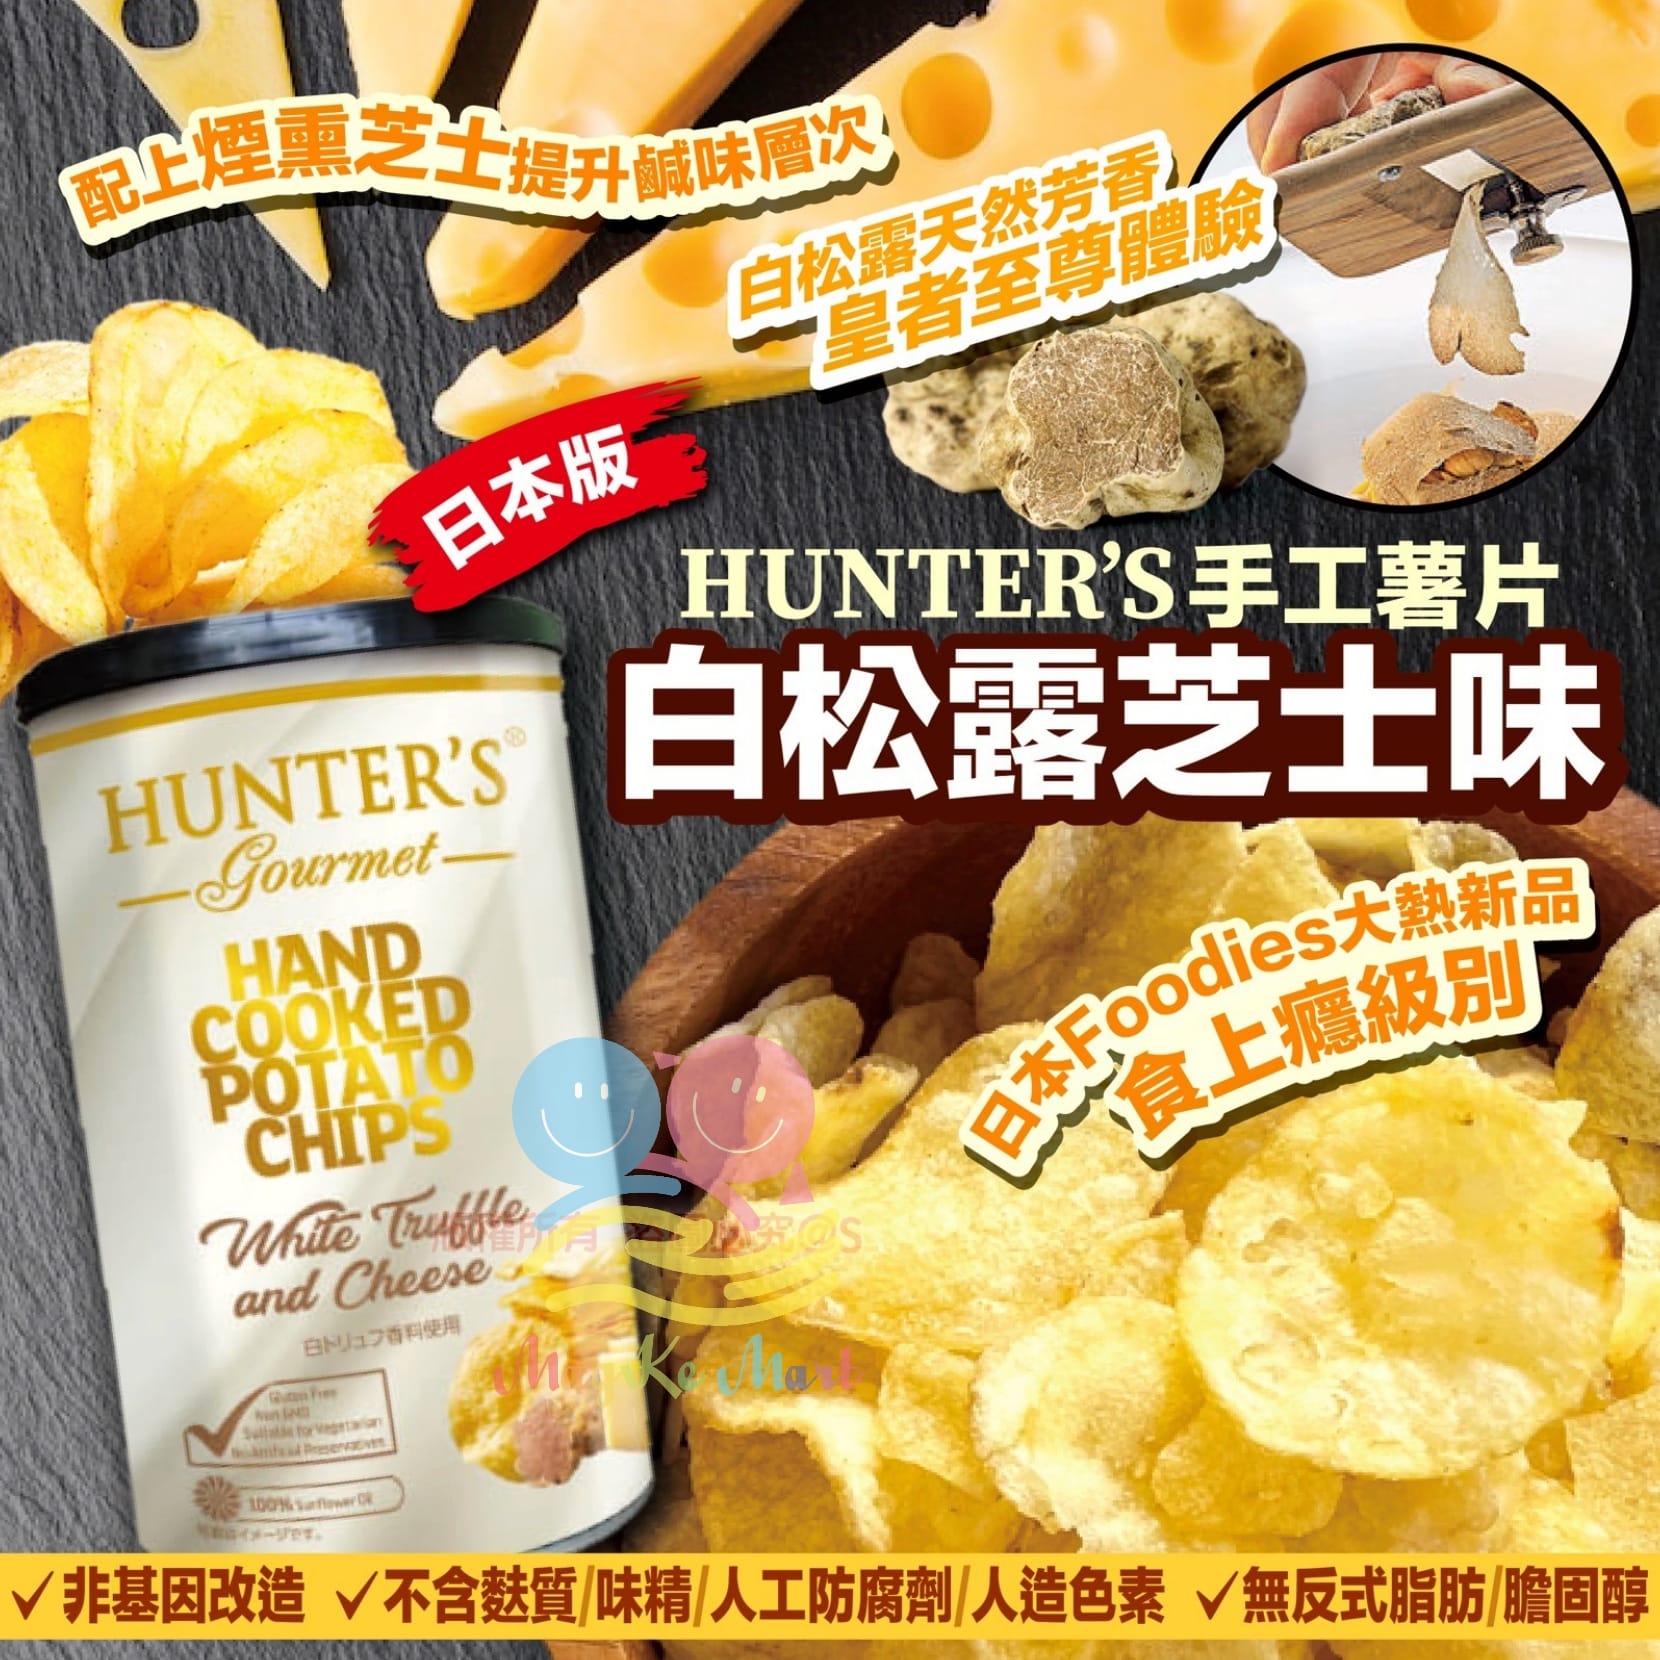 日本版 HUNTER’S 手工薯片白松露芝士味 150g